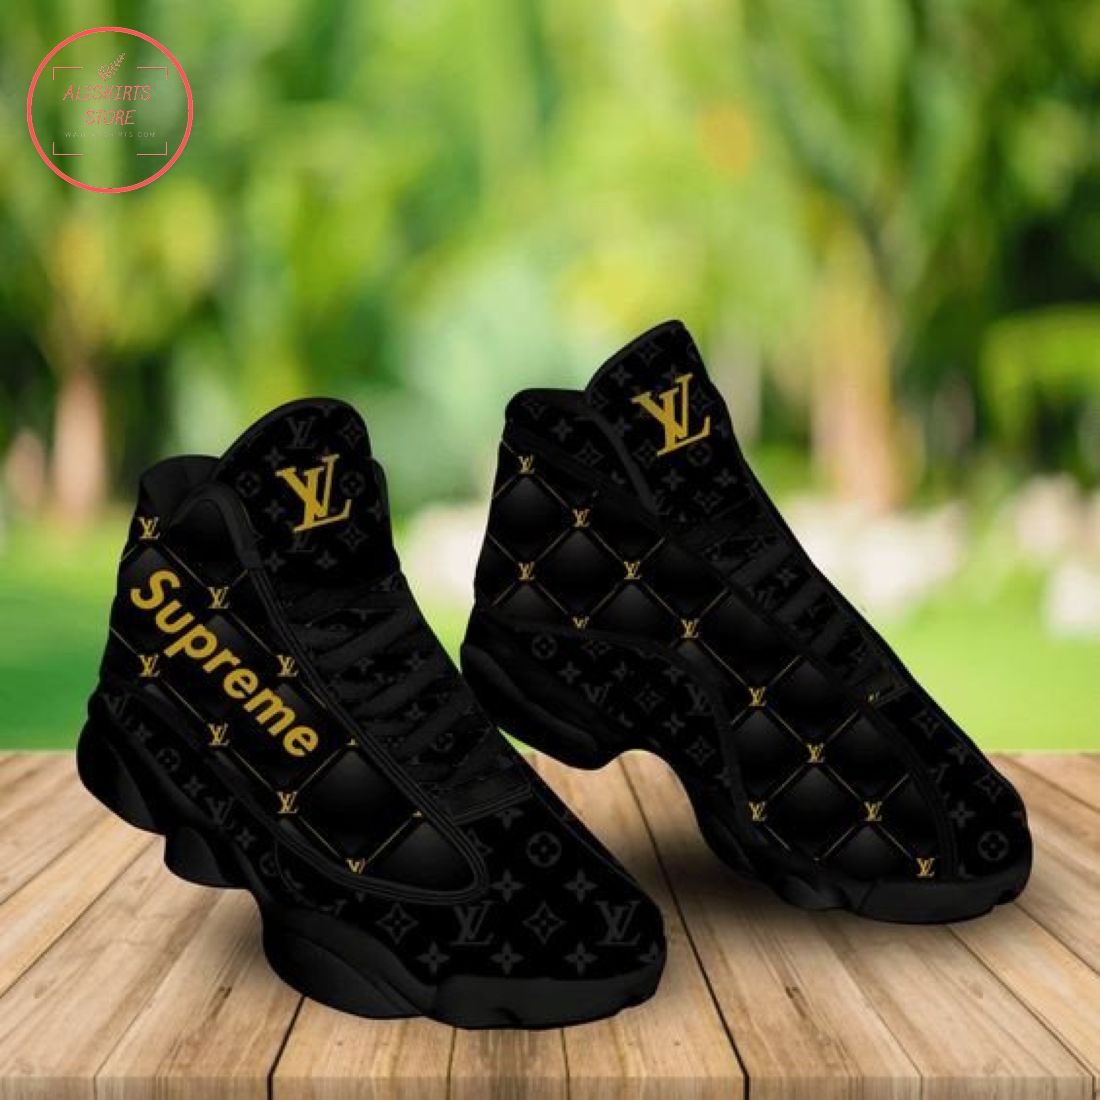 Supreme LV Black Air Jordan 13 Sneakers